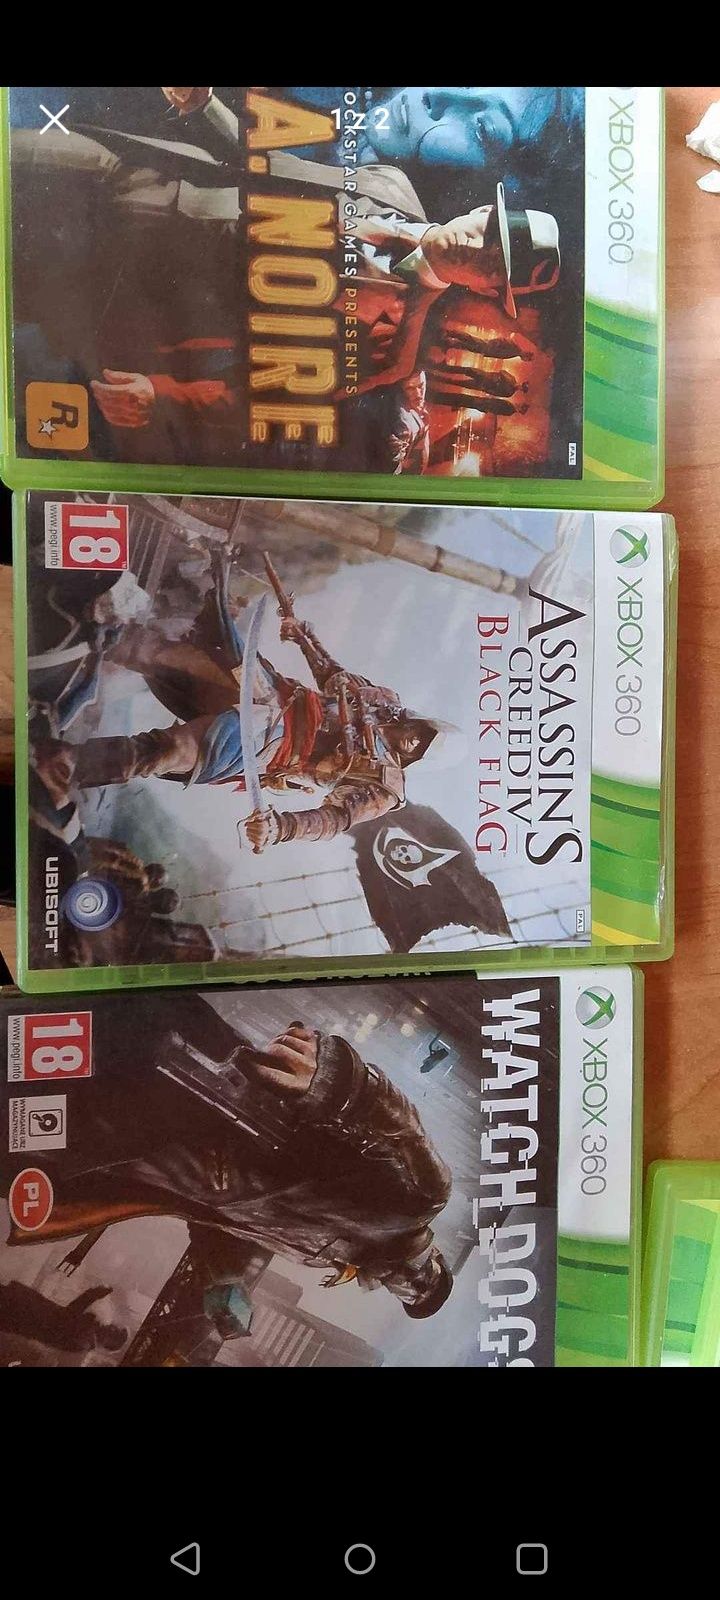 Kolekcja gier Xbox 360